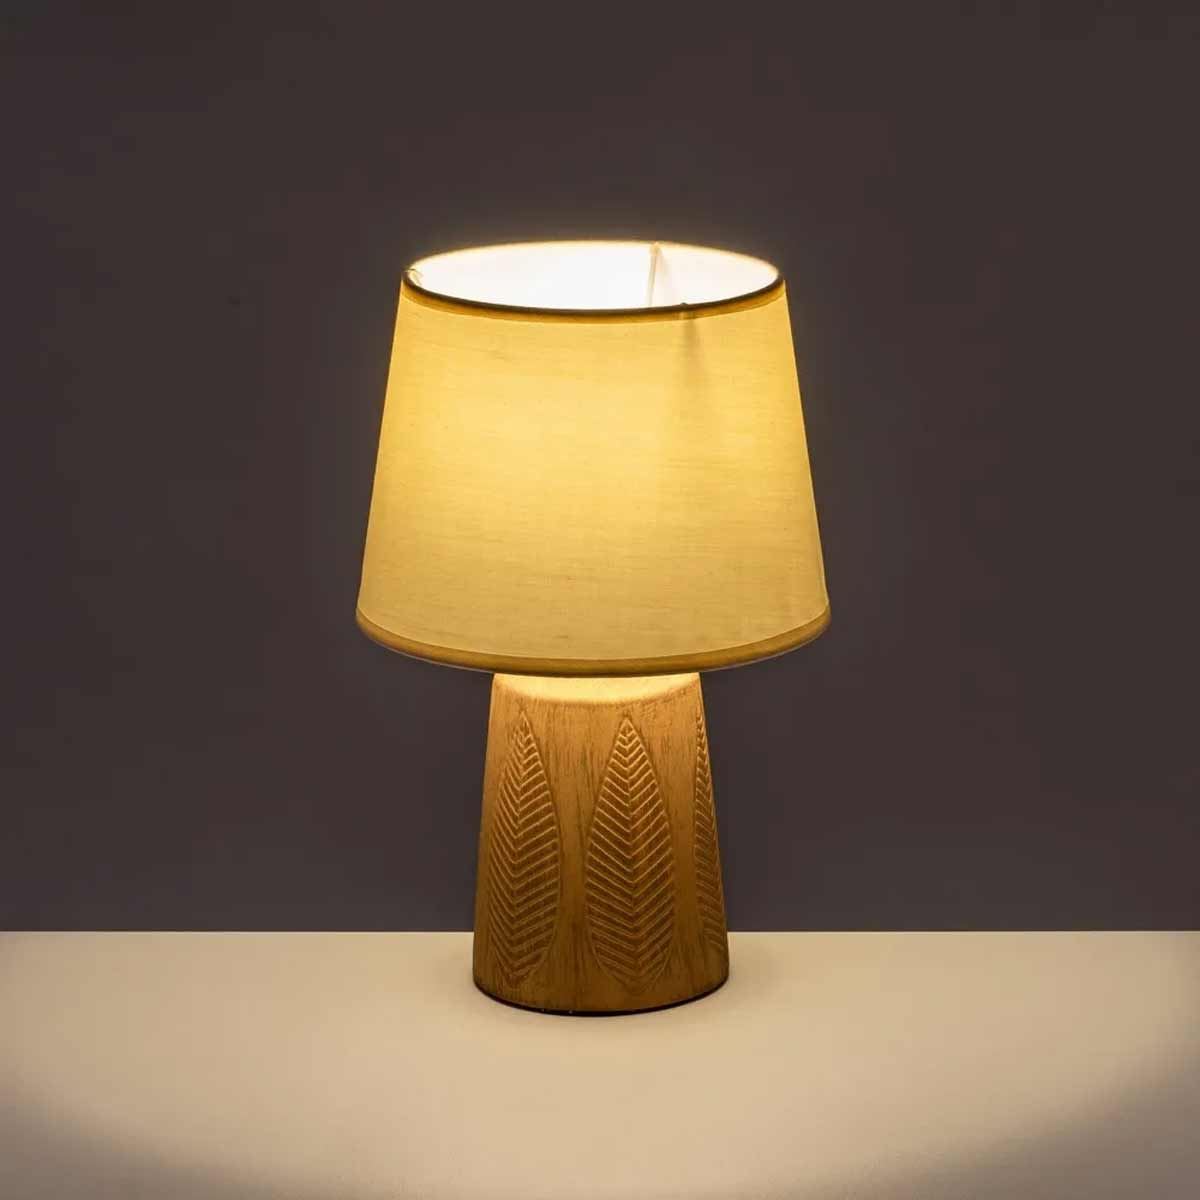 Terracotta Ceramic Lamp 32 cm